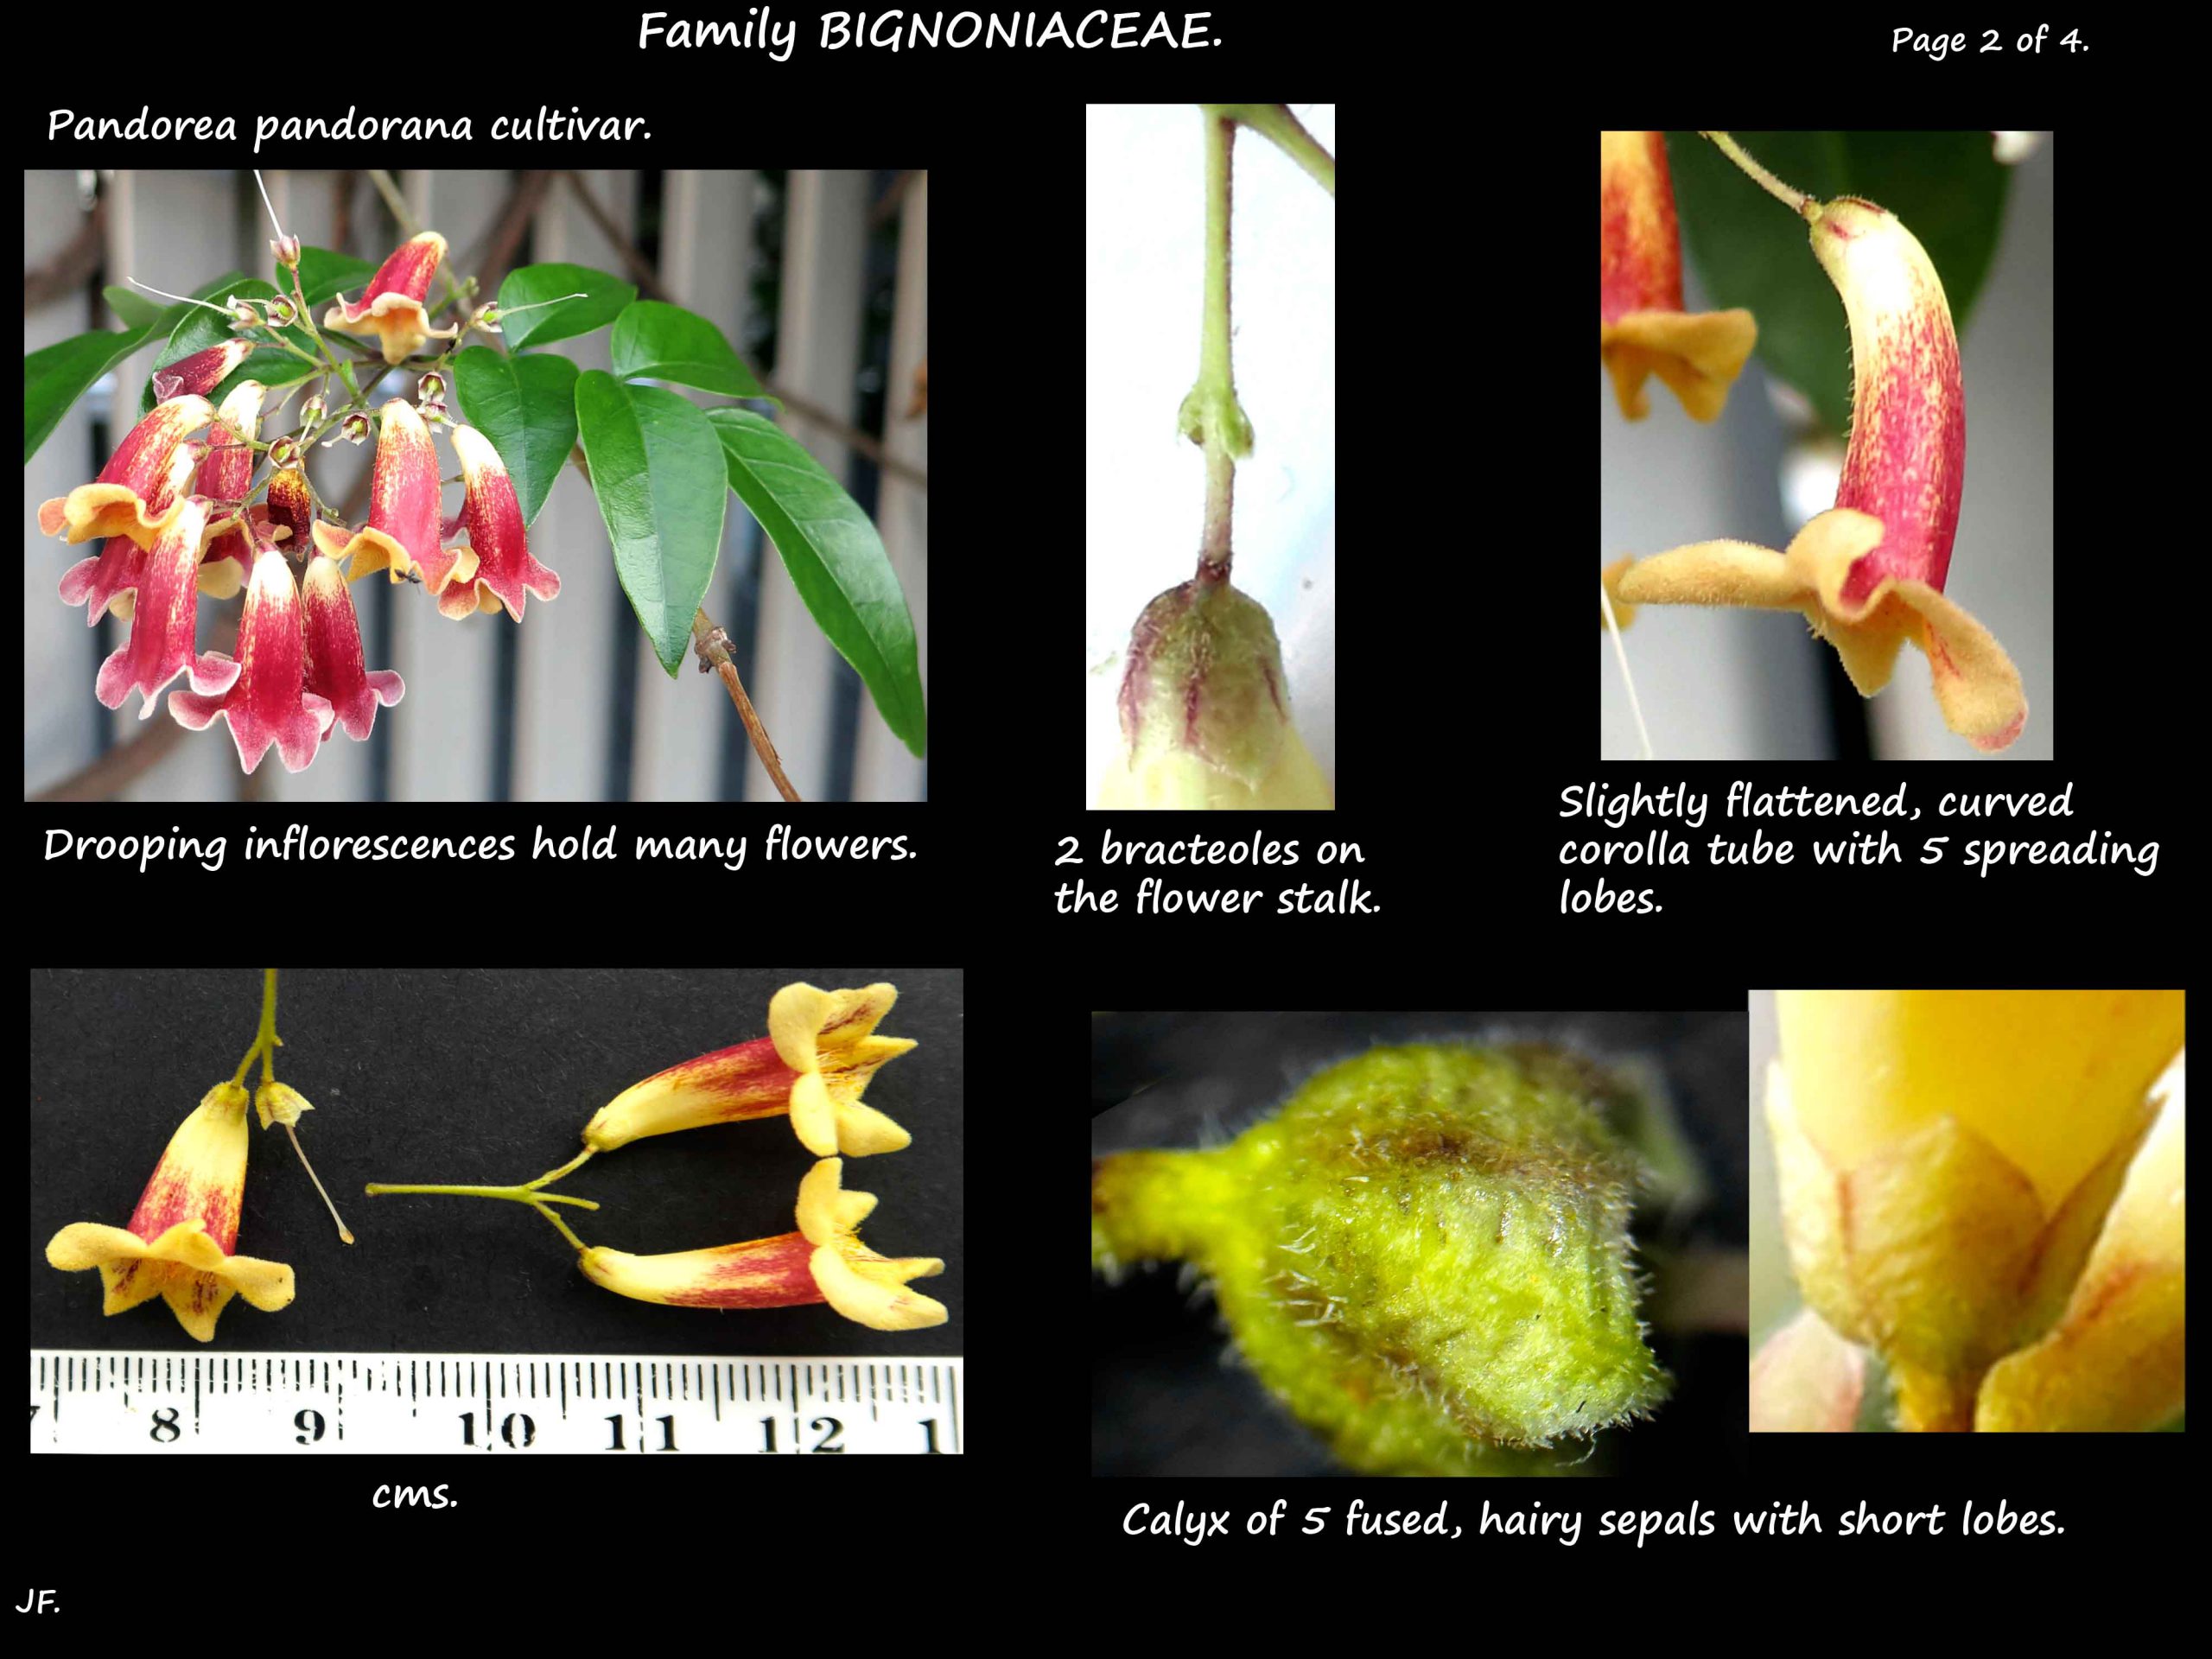 3 Pandorea cultivar flowers & calyx